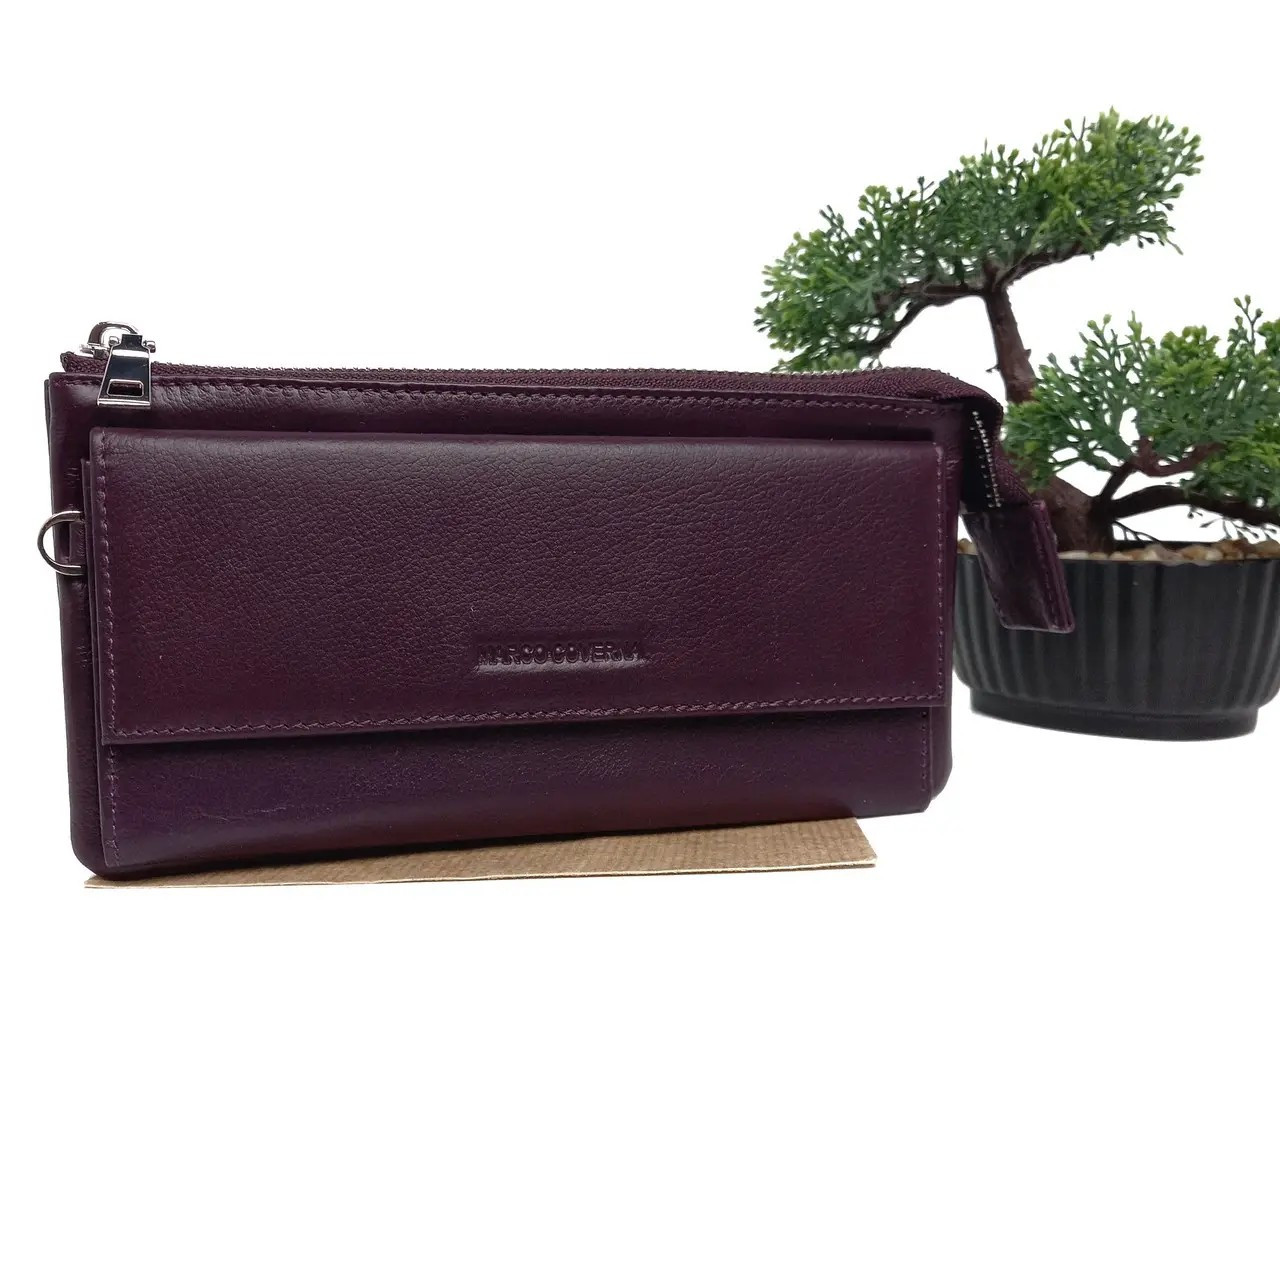 Жіночий брендовий гаманець натуральна шкіра фіолетовий Арт.MC-6052-11 M.Coverna (548), фото 1